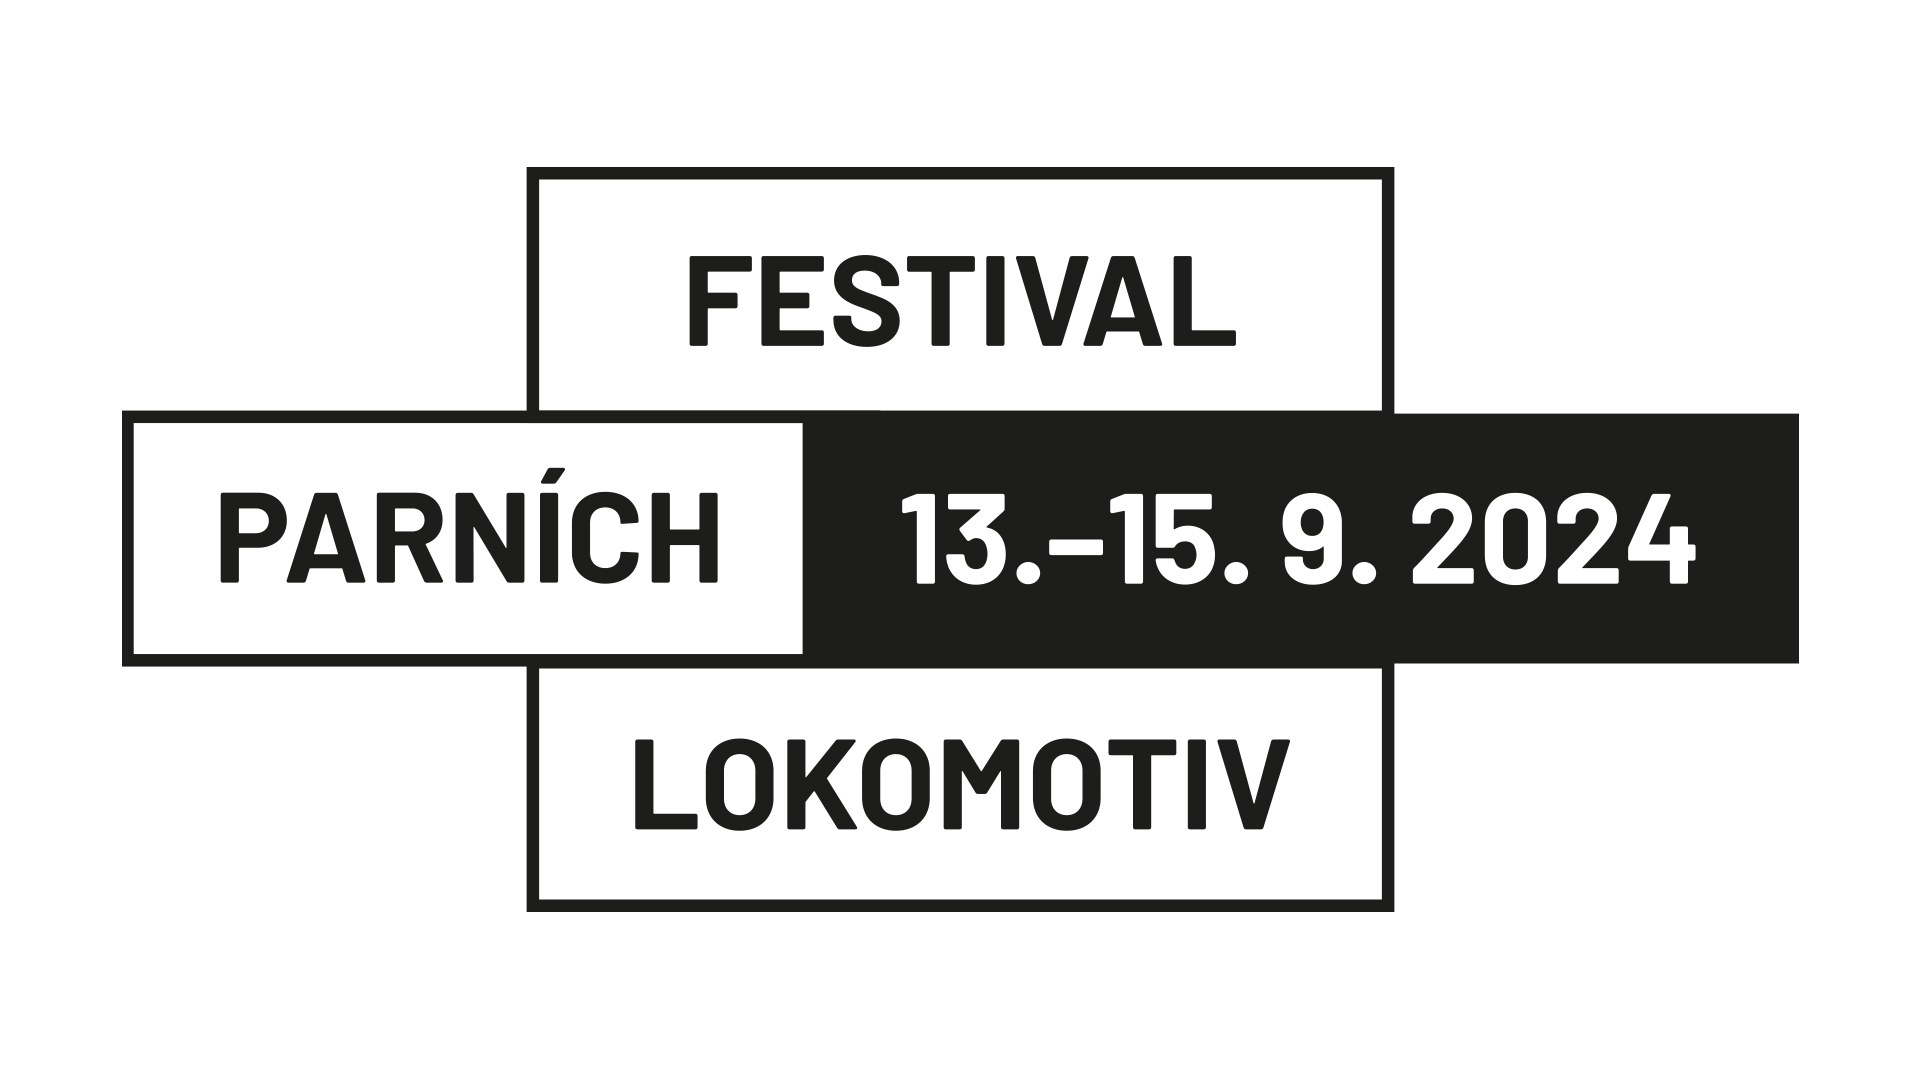 5. FESTIVAL DER DAMPFLOKOMOTIVEN - 13.09. - 15.09.2024 - Benešov bei Prag, Tschechische Republik